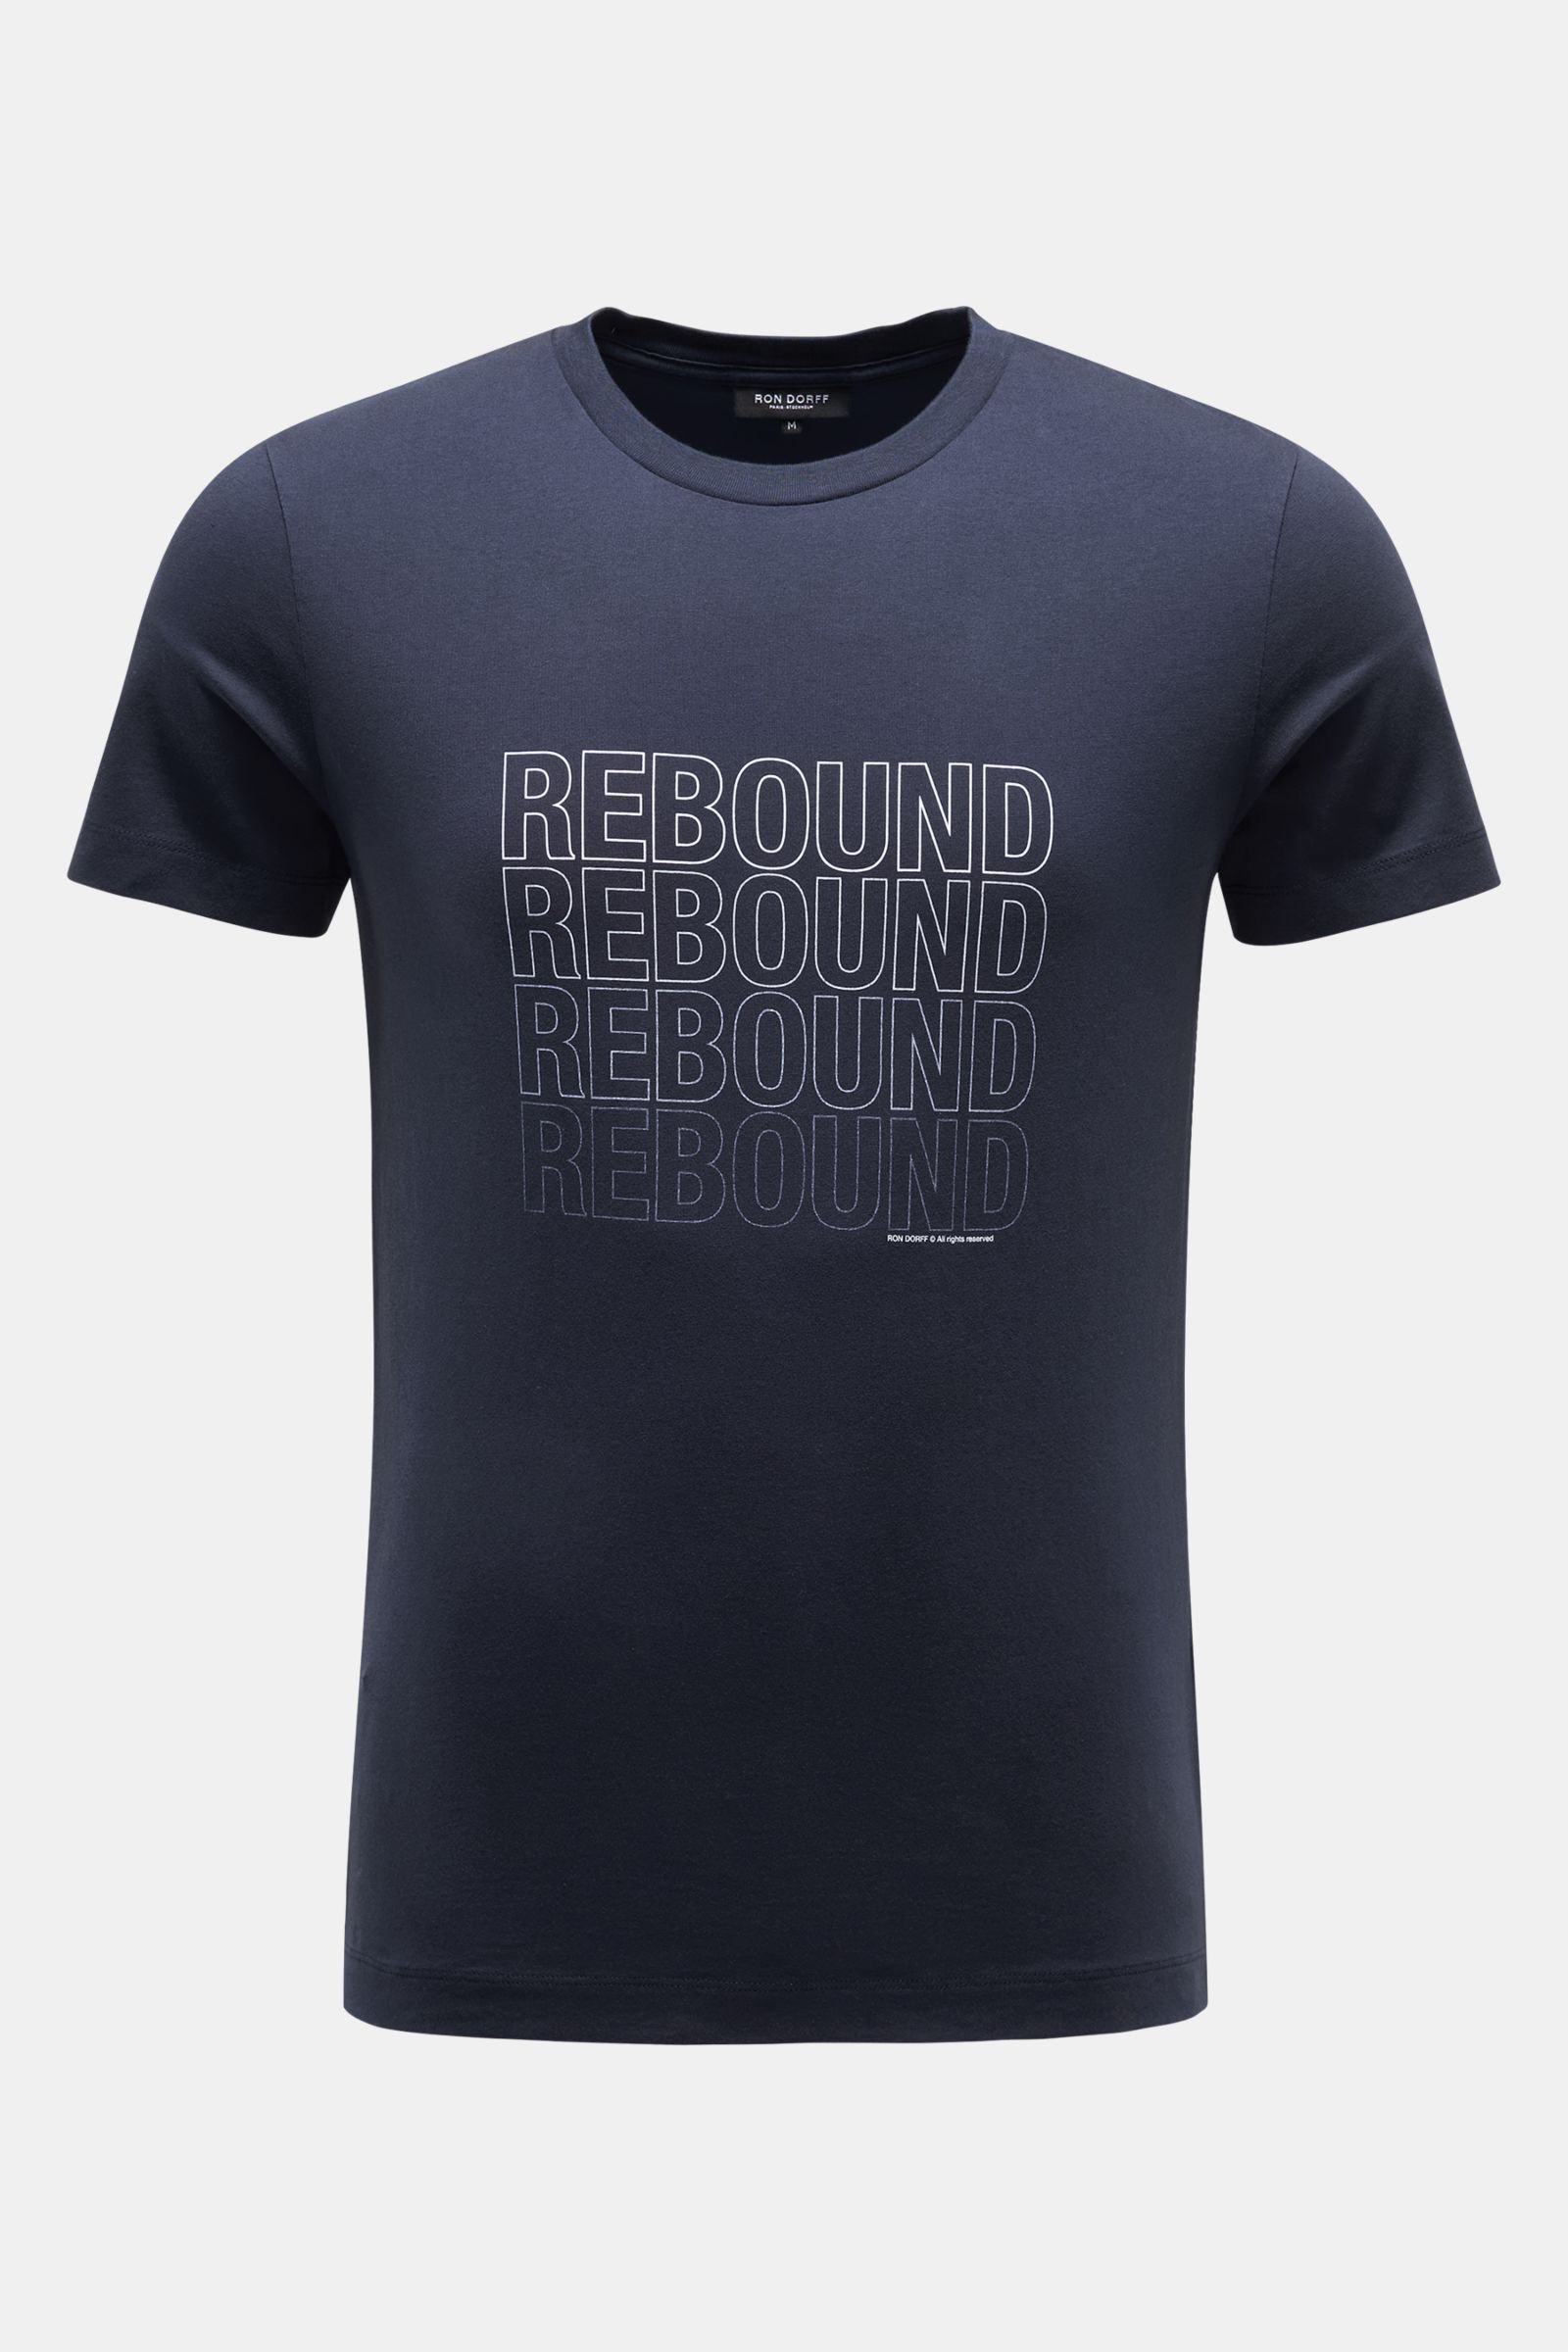 Crew neck T-shirt 'Rebound' navy